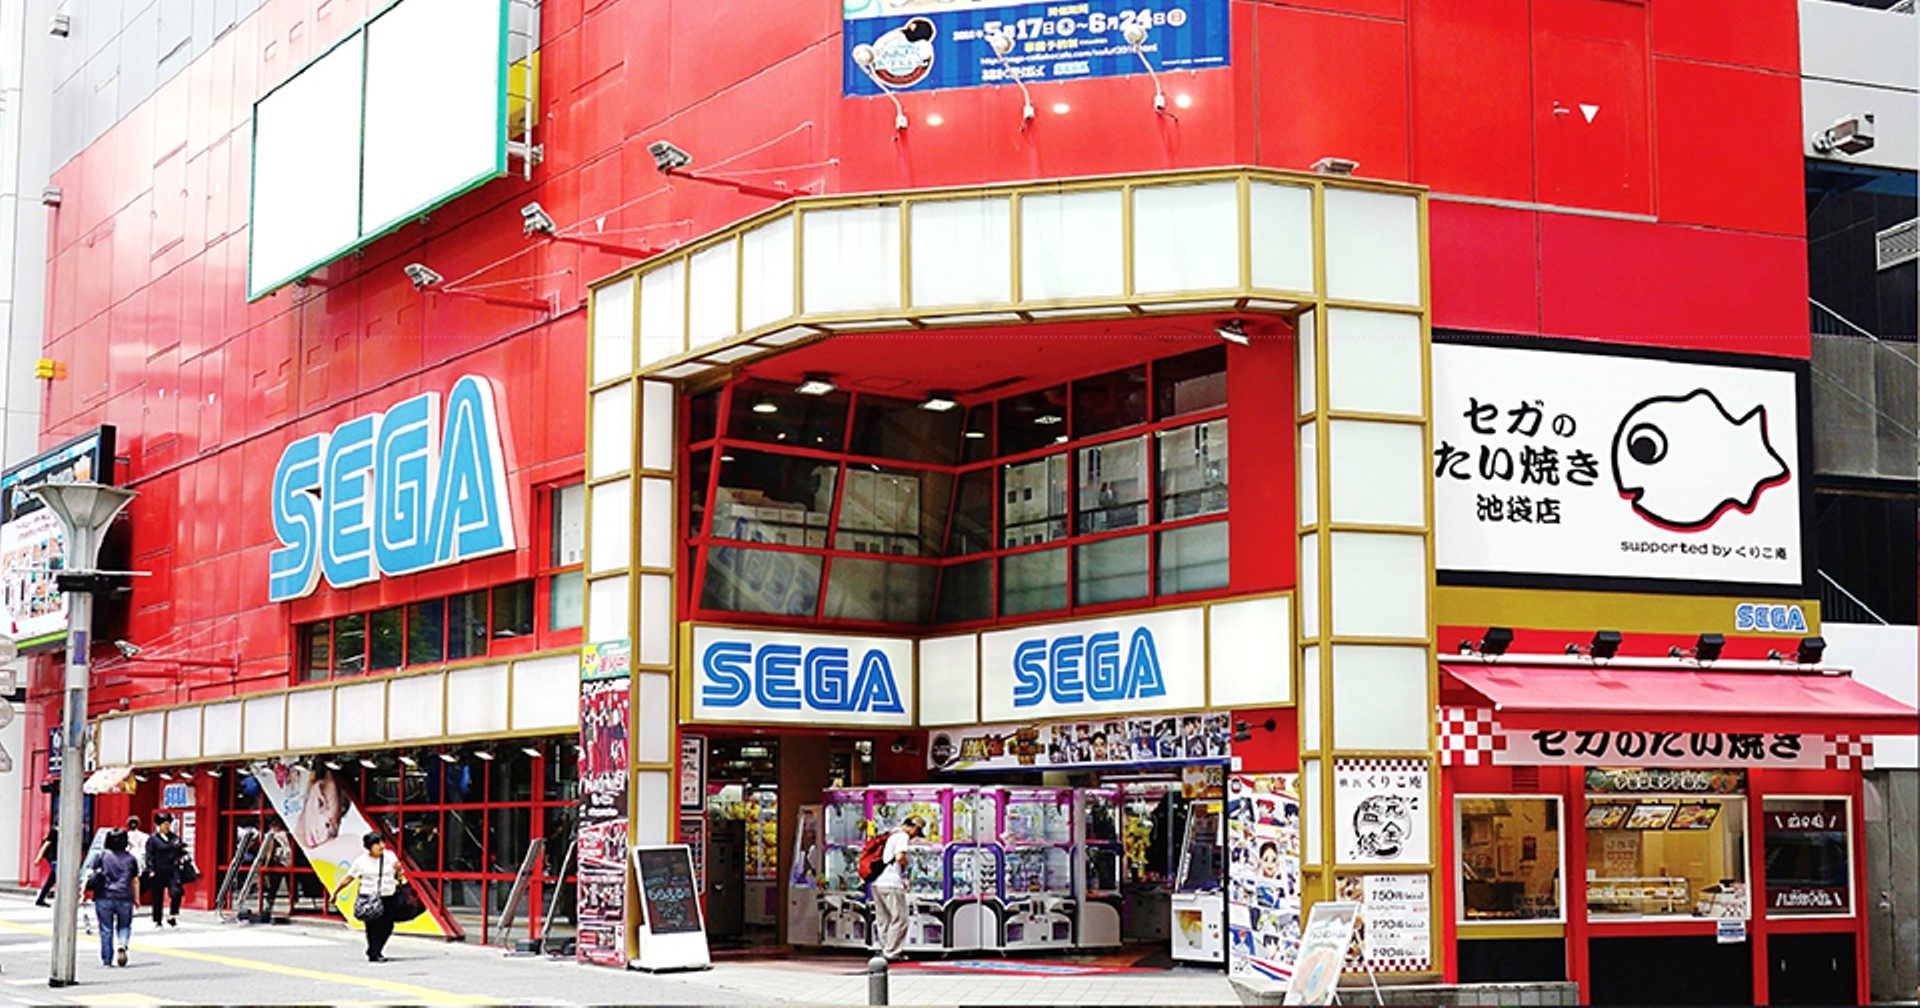 ร้านเกม Arcade ชื่อดังในกรุงโตเกียวปิดกิจการ